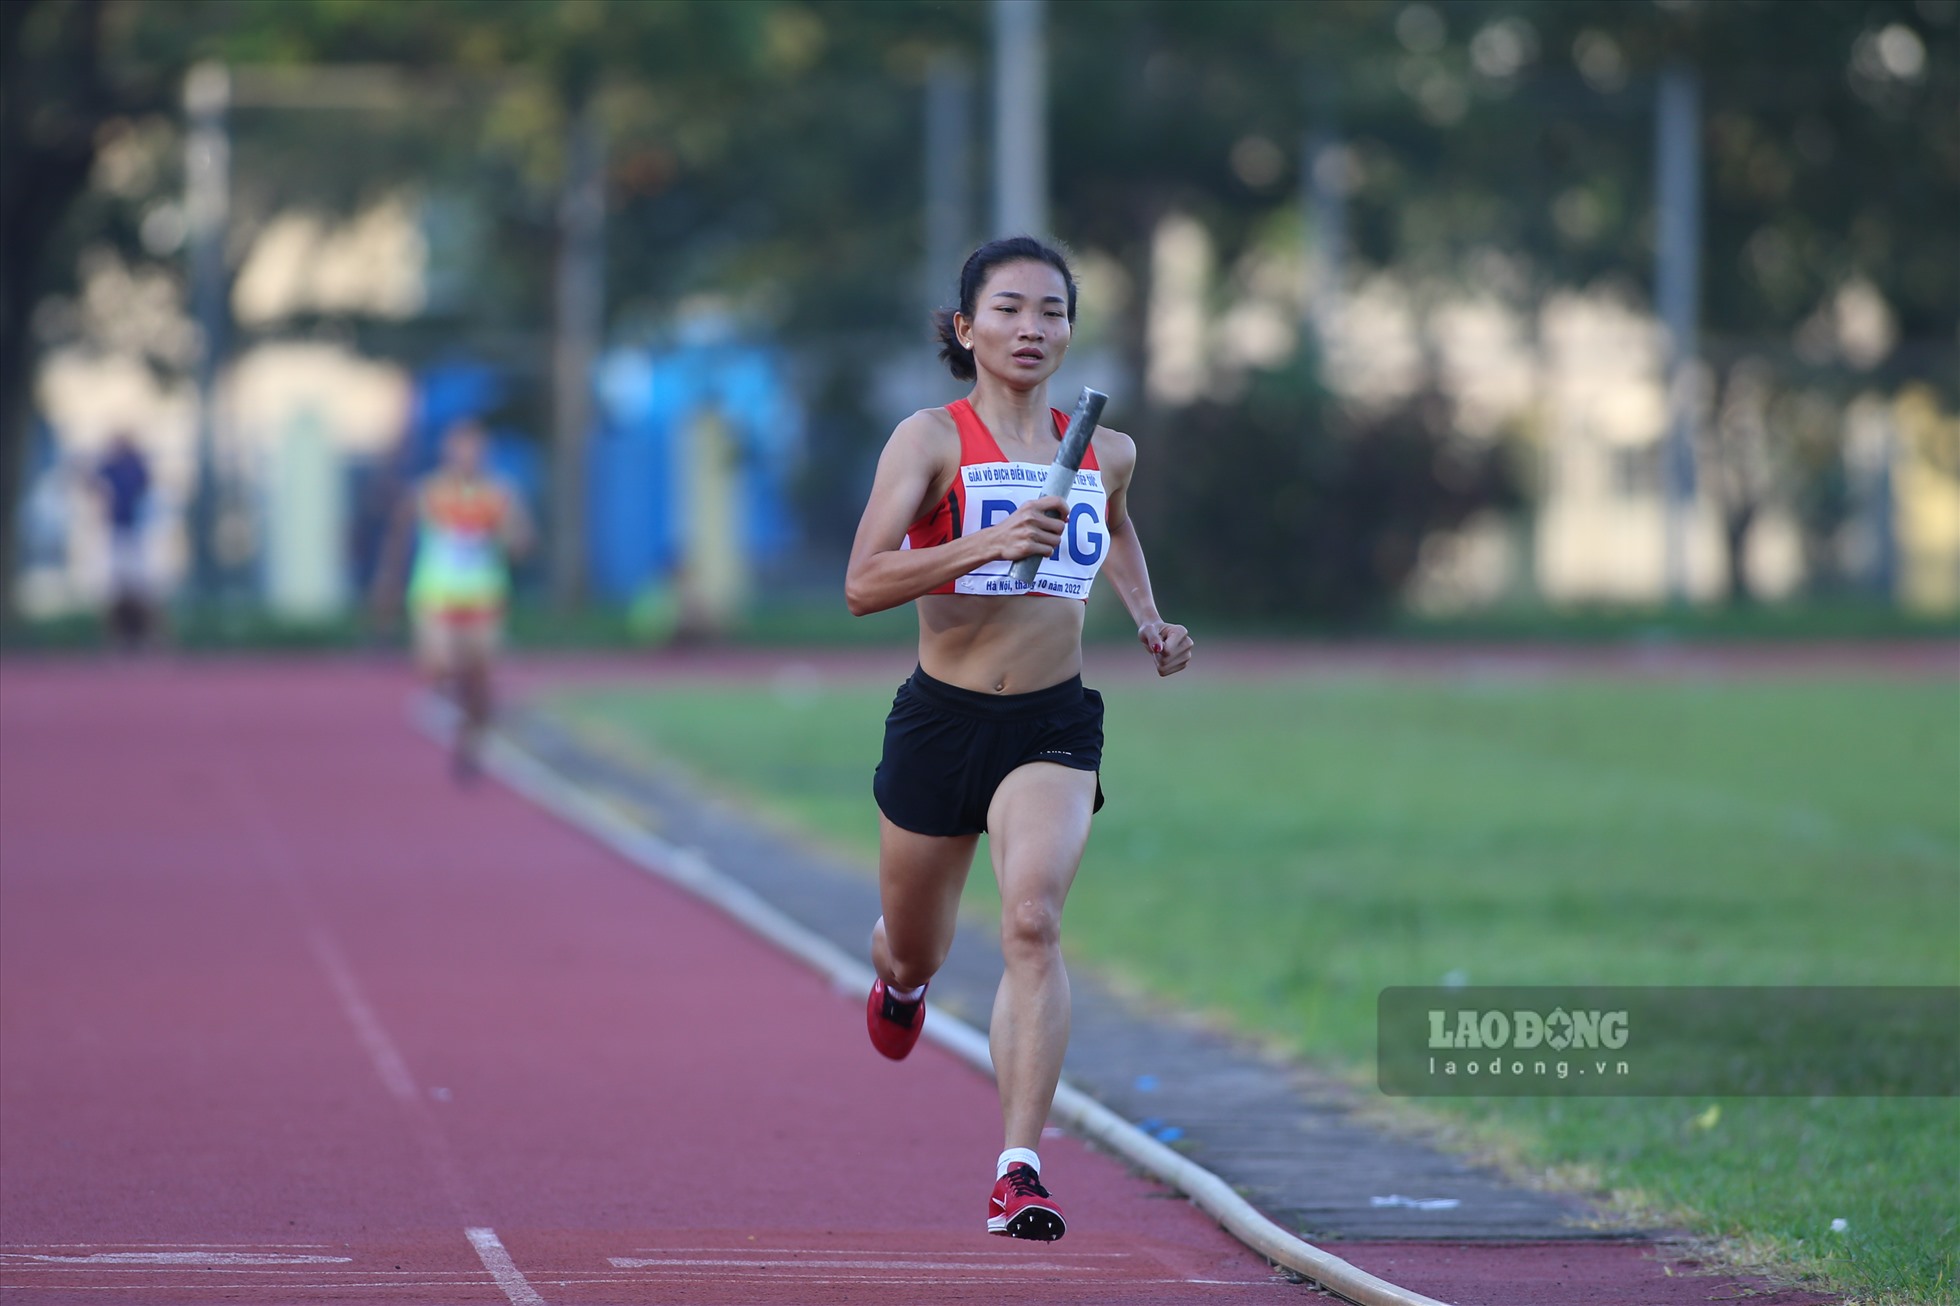 Niềm hi vọng của Bắc Giang và cũng nhận được sự chờ đợi của người yêu điền kinh là Nguyễn Thị Oanh. Cô gái vàng của điền kinh Việt Nam được sắp xếp chạy ở lượt cuối cùng trong 4 lượt chạy của đội.